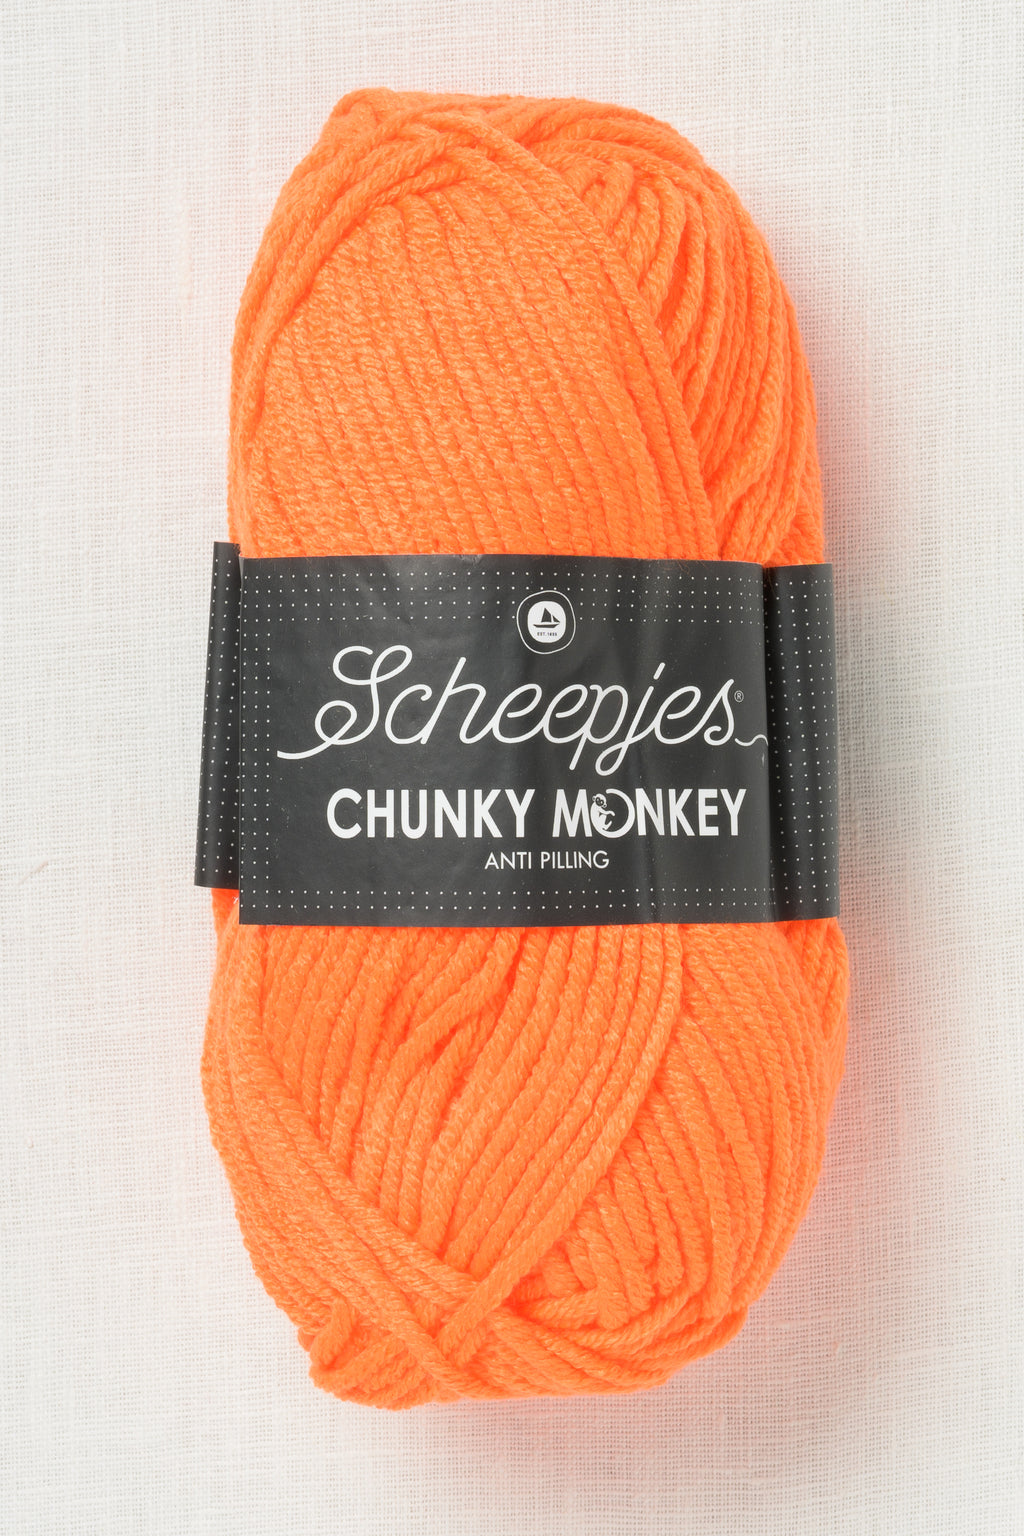 Scheepjes Chunky Monkey 1256 Neon Orange